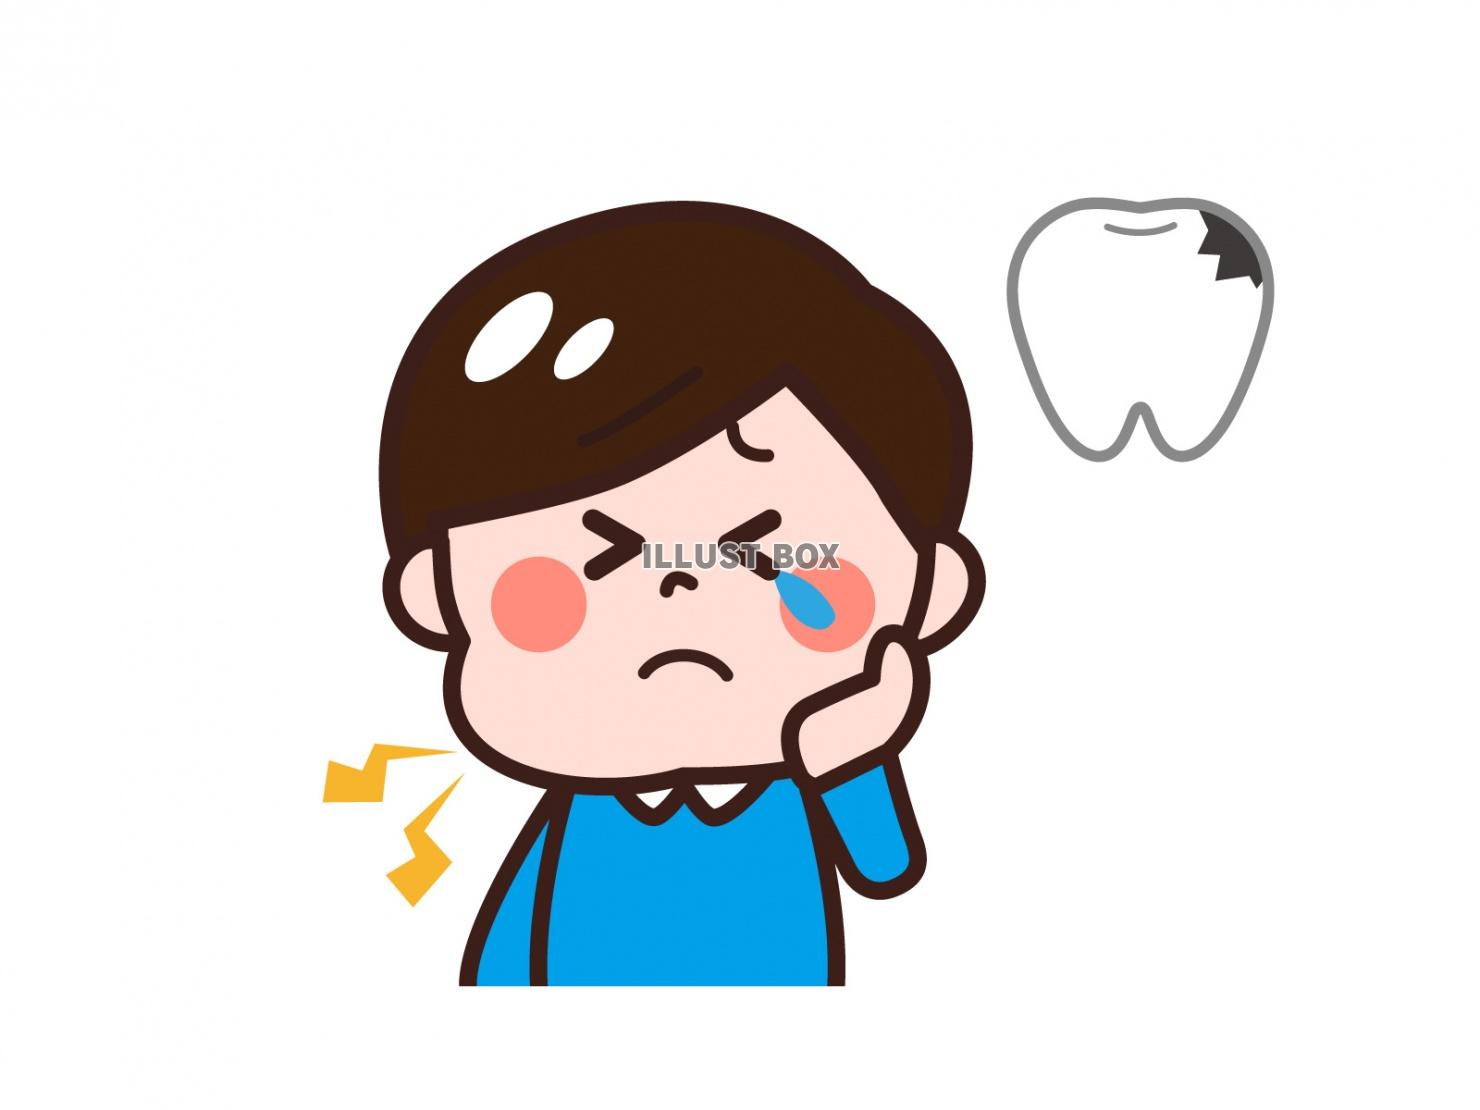 虫歯が痛い男の子のイラスト